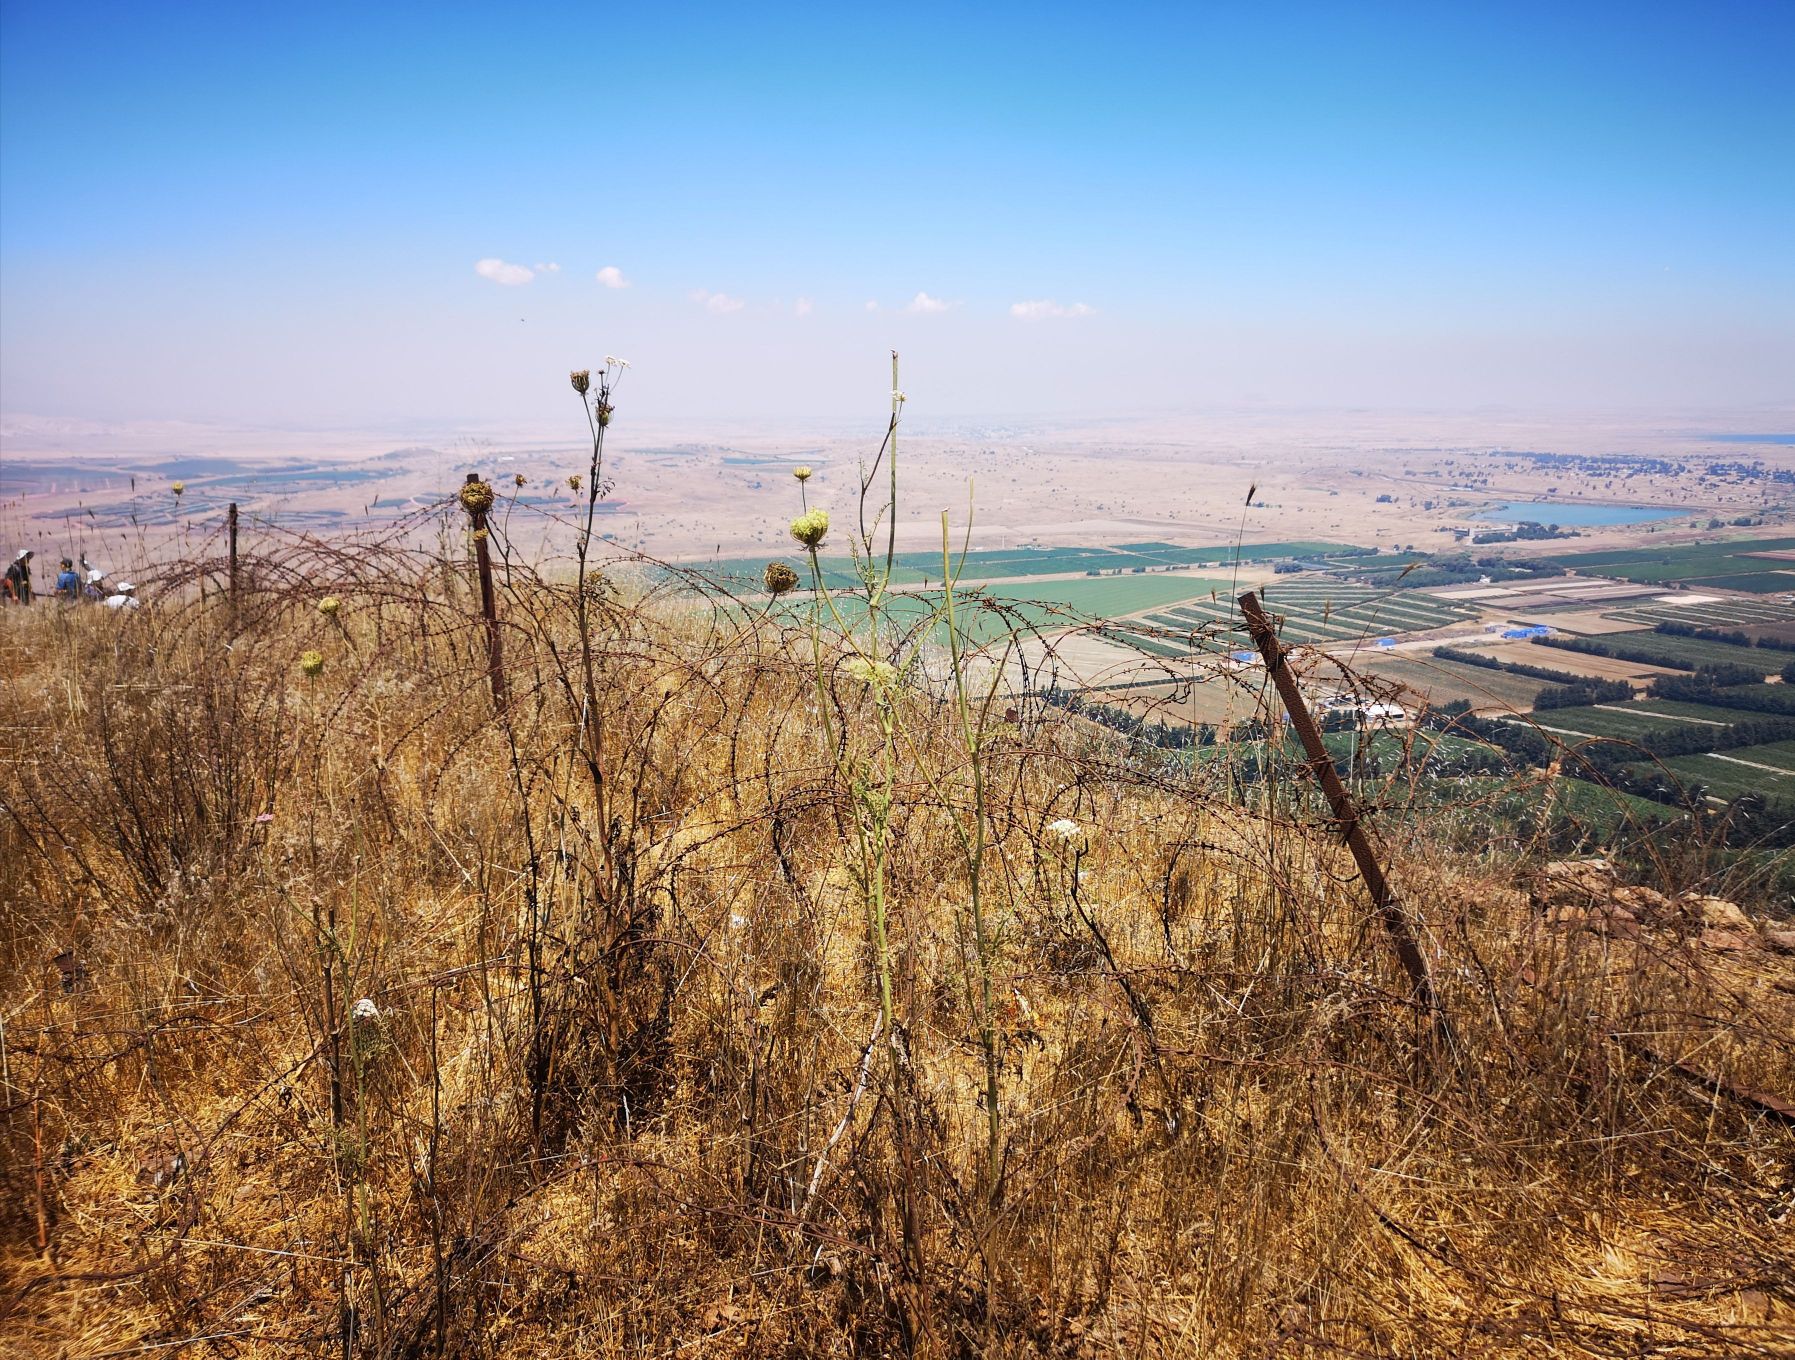 戈兰高地 距离北京7006㎞，位于中东地区、以色列最北端的戈兰高地，这片叙以边界的狭长山地，一直是中